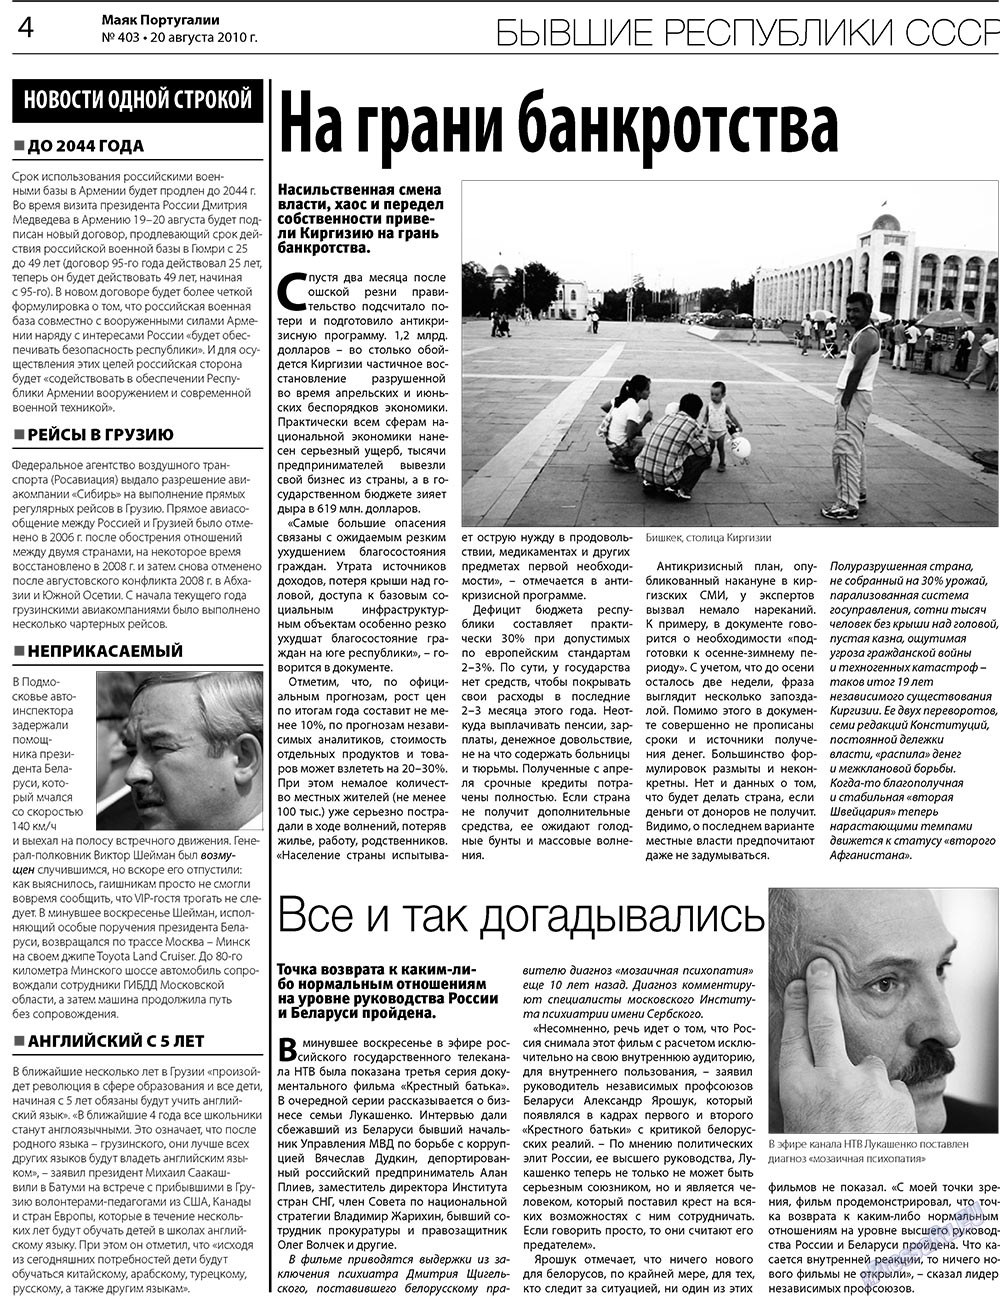 Маяк Португалии (газета). 2010 год, номер 403, стр. 4